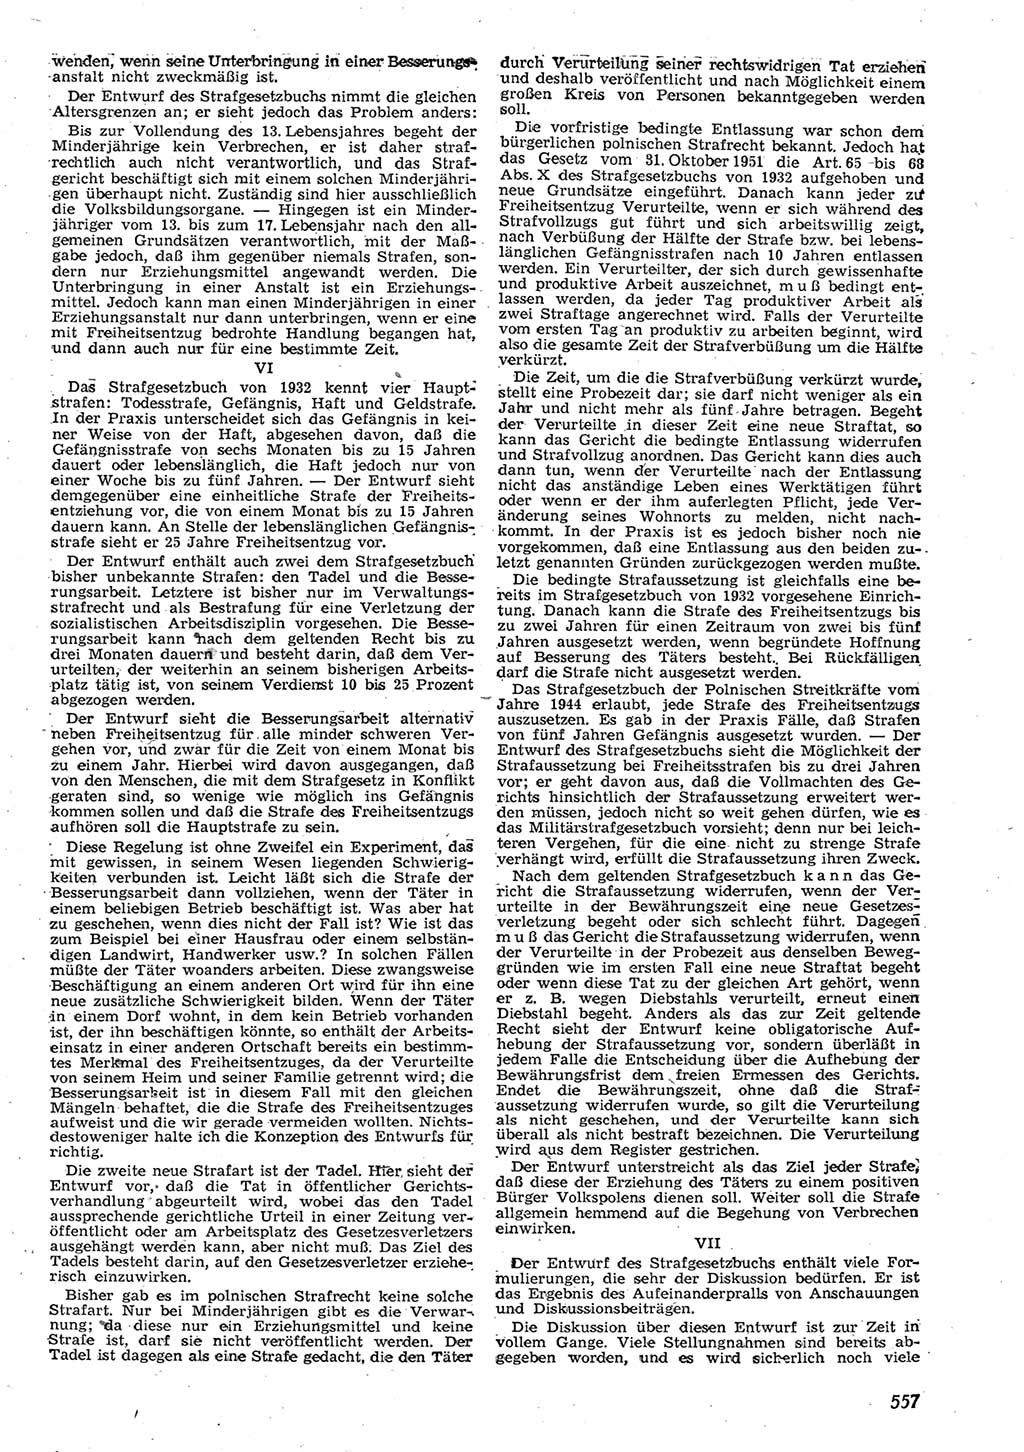 Neue Justiz (NJ), Zeitschrift für Recht und Rechtswissenschaft [Deutsche Demokratische Republik (DDR)], 10. Jahrgang 1956, Seite 557 (NJ DDR 1956, S. 557)